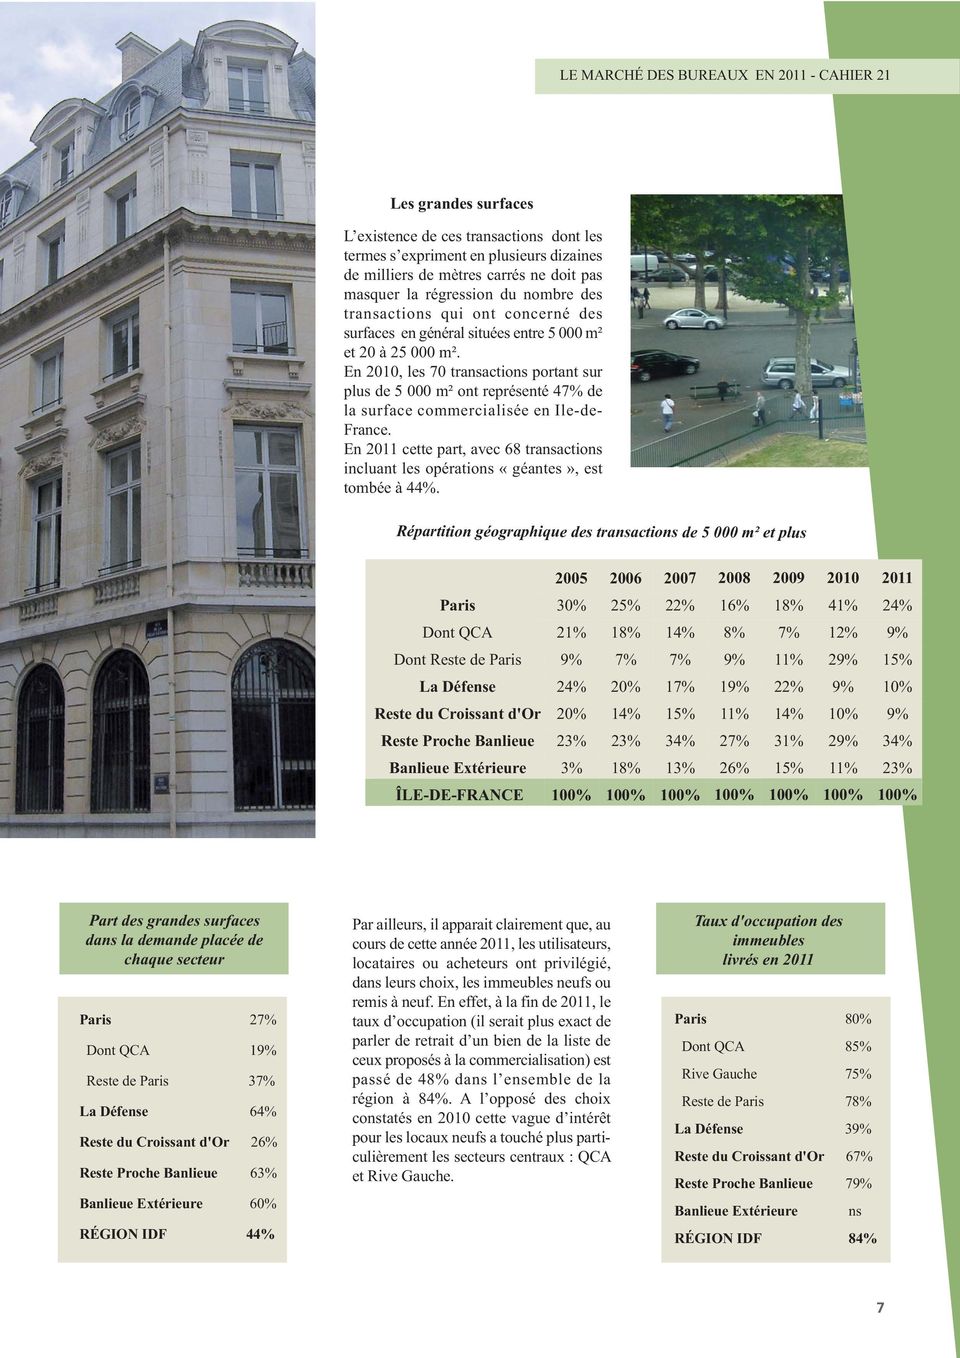 En 2010, les 70 transactions portant sur plus de 5 000 m² ont représenté 47% de la surface commercialisée en Ile-de- France.